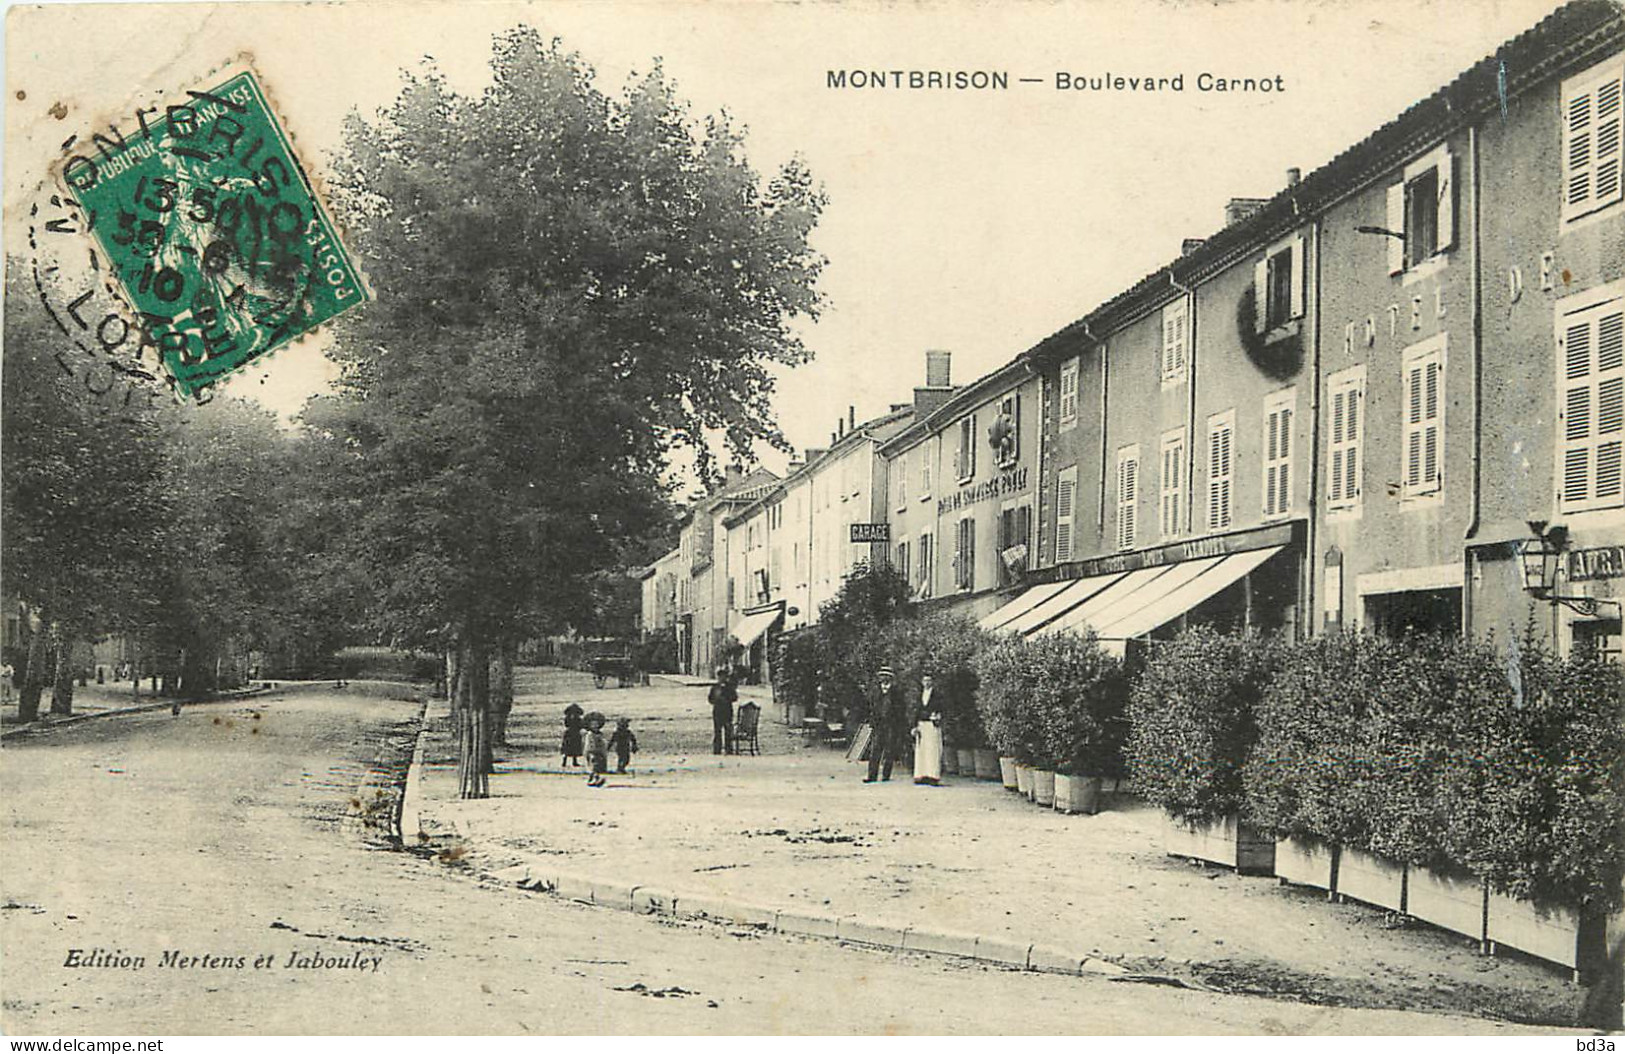  42  MONTBRISON  Boulevard Carnot - Montbrison